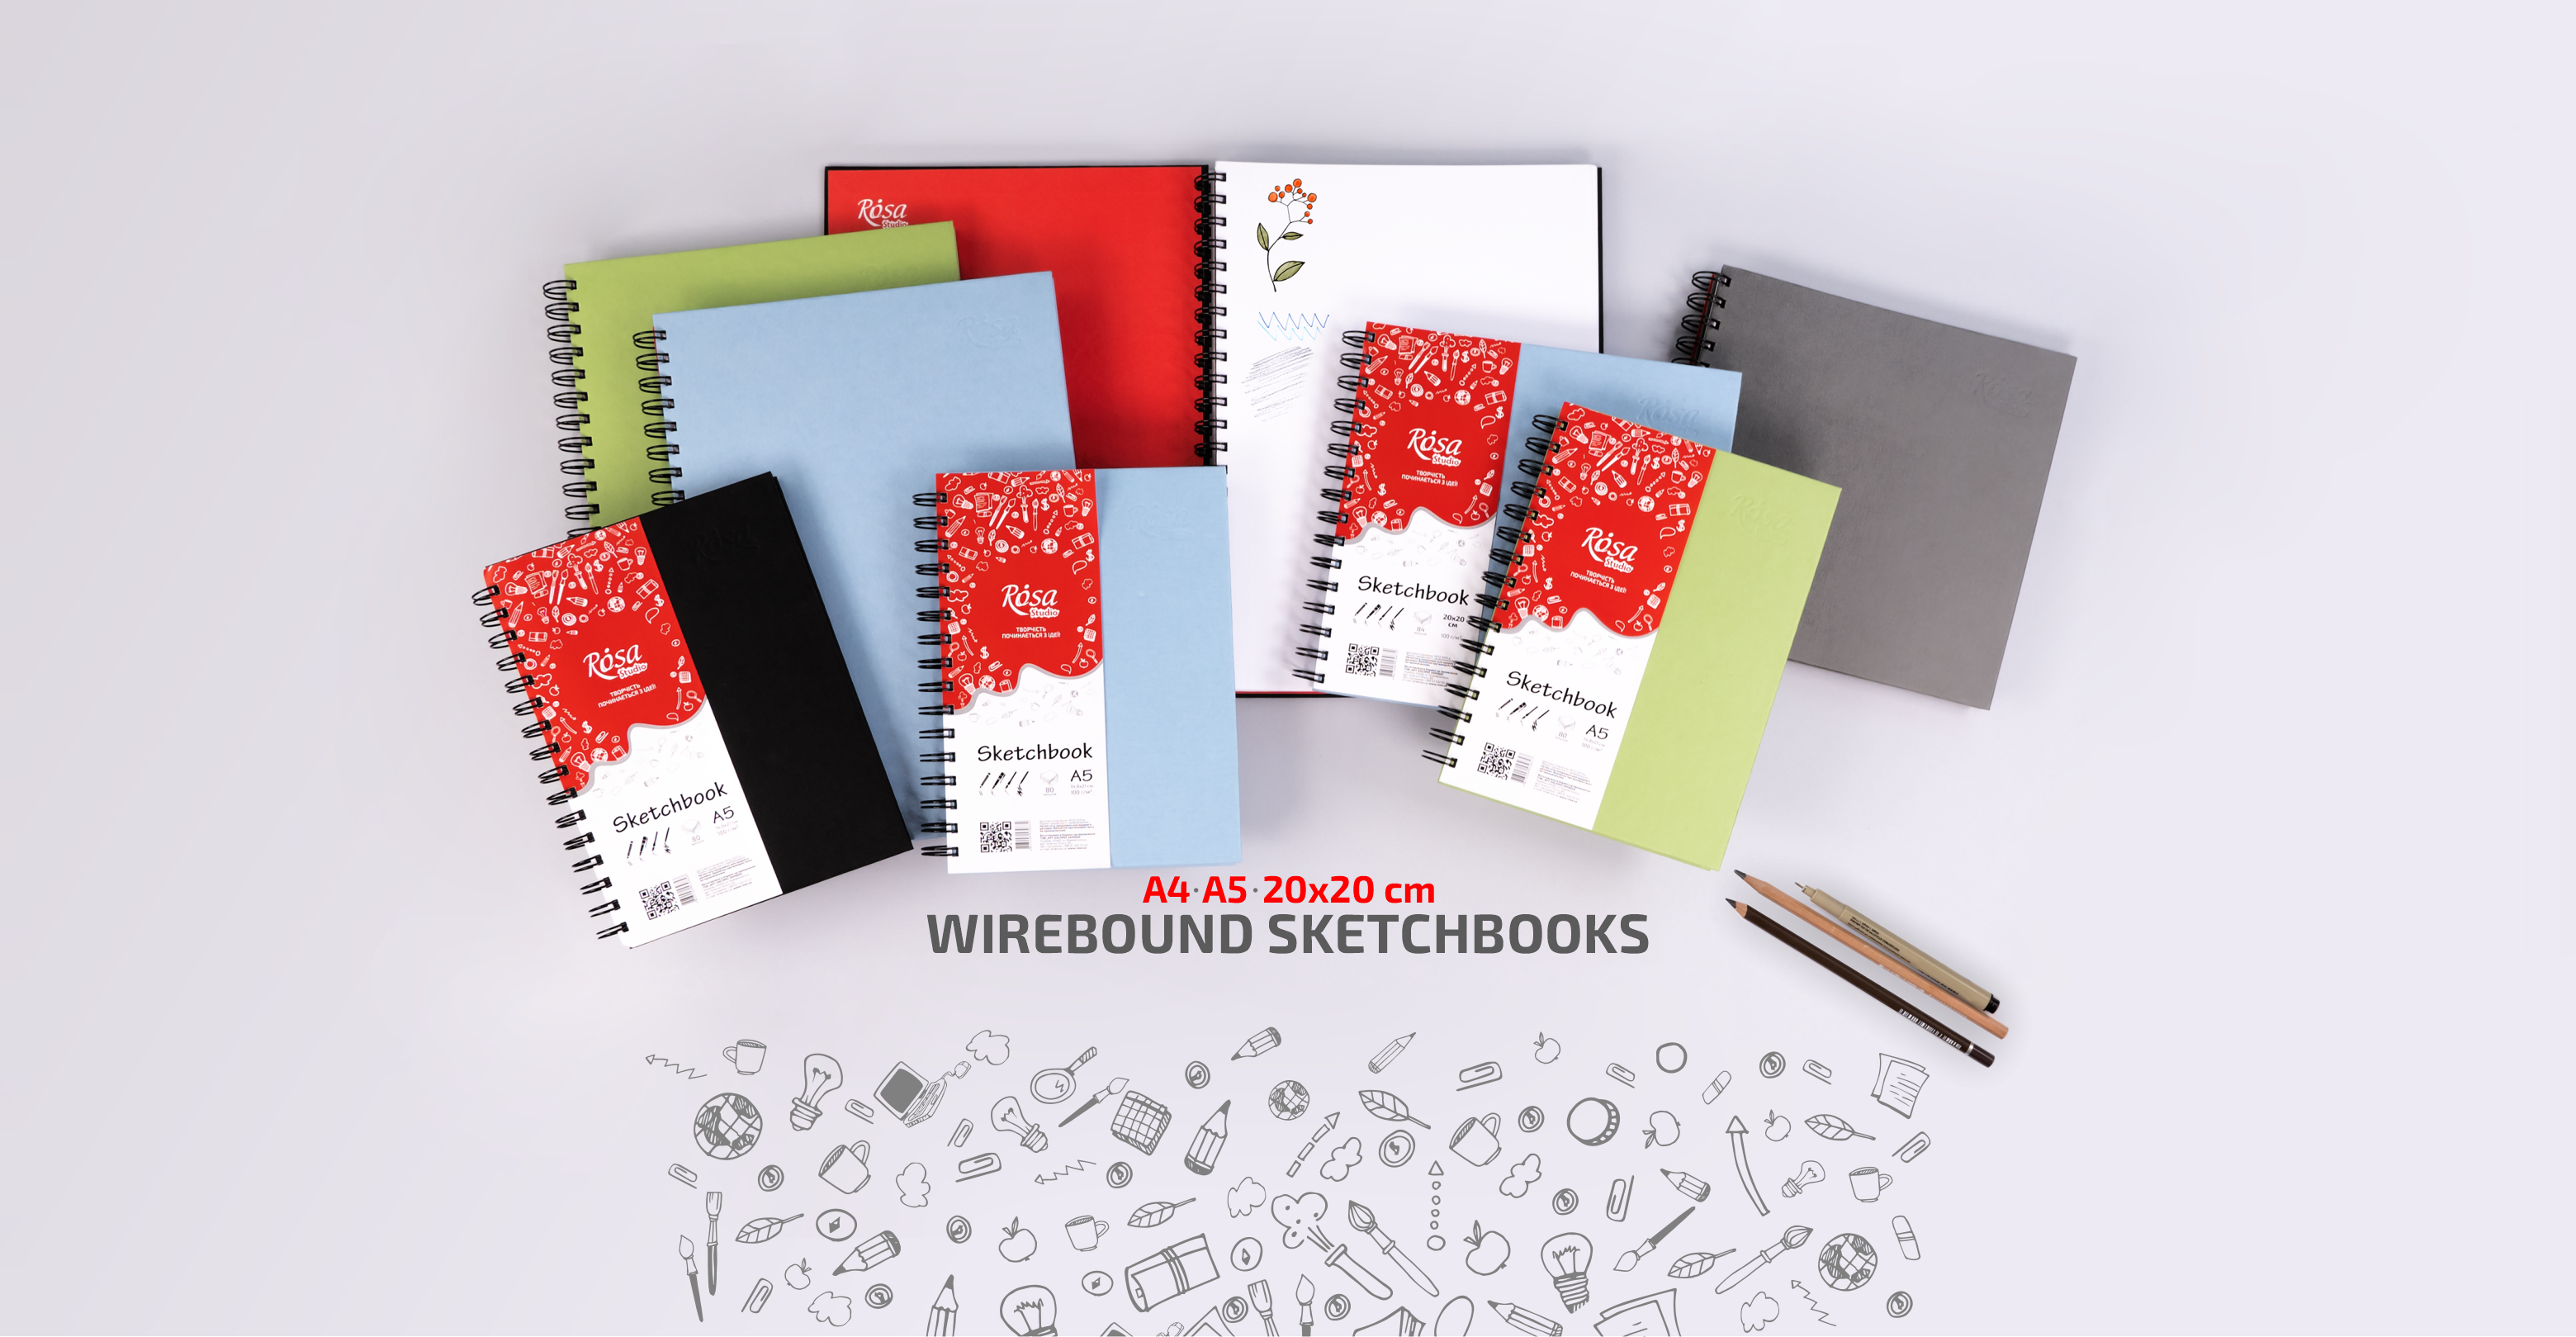 Wirebound sketchbooks